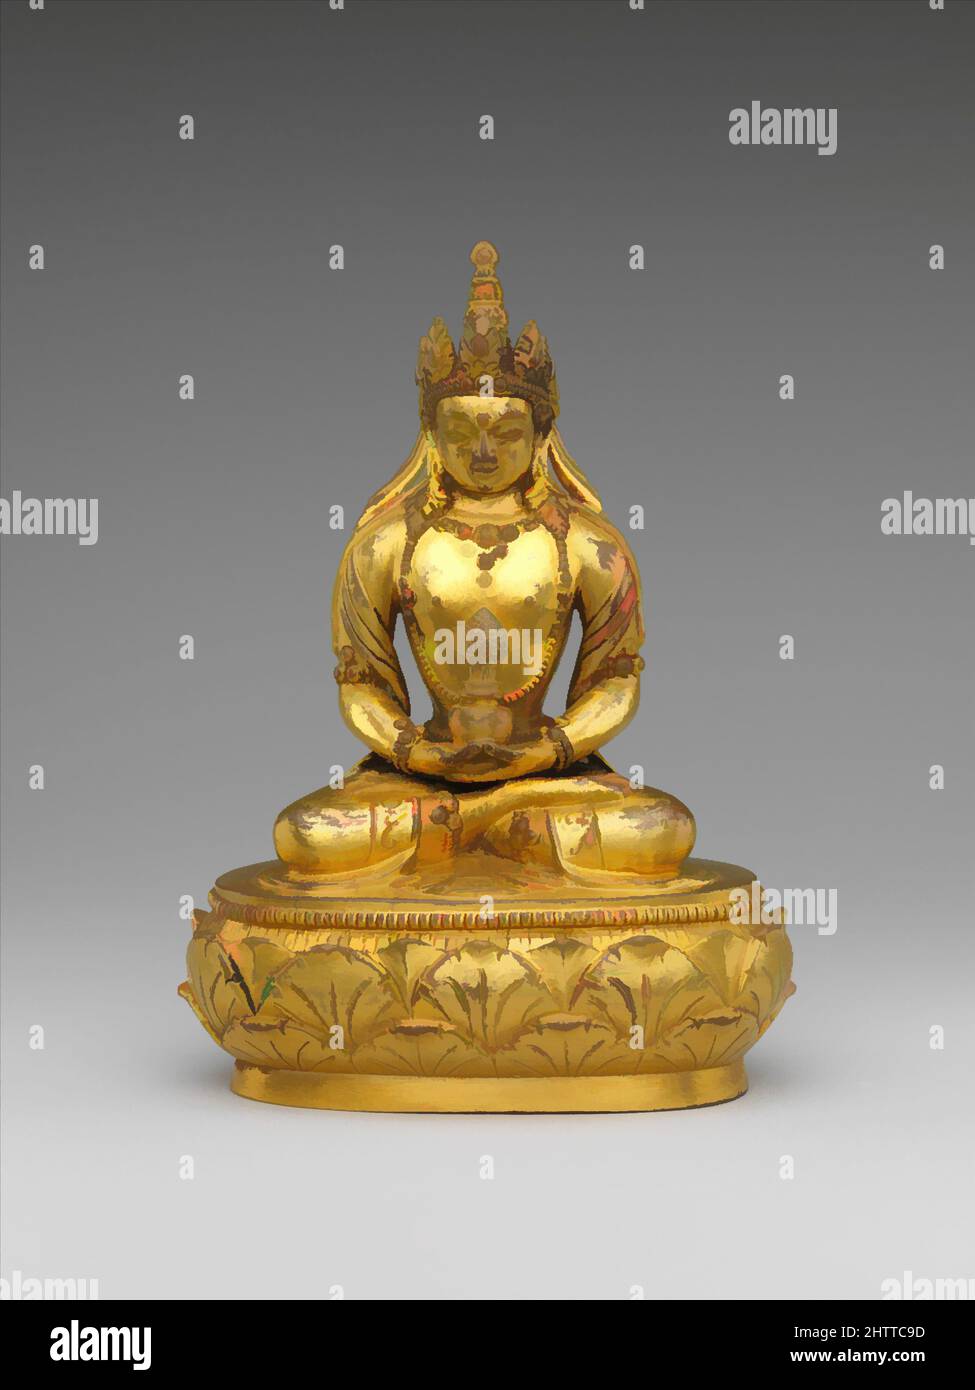 Arte ispirata da Amitayus seduto, 17th–18th secolo, Mongolia, bronzo dorato, H. 4 5/8 poll. (11,7 cm); W. 3 3/8" (8,6 cm); D. 2" (5,1 cm), scultura, il Buddha Amitayus tiene un vaso che contiene l'elisir della vita; è accreditato di fornire ai devoti la salute e la longevità, opere classiche modernizzate da Artotop con un tuffo di modernità. Forme, colore e valore, impatto visivo accattivante sulle emozioni artistiche attraverso la libertà delle opere d'arte in modo contemporaneo. Un messaggio senza tempo che persegue una nuova direzione selvaggiamente creativa. Artisti che si rivolgono al supporto digitale e creano l'NFT Artotop Foto Stock